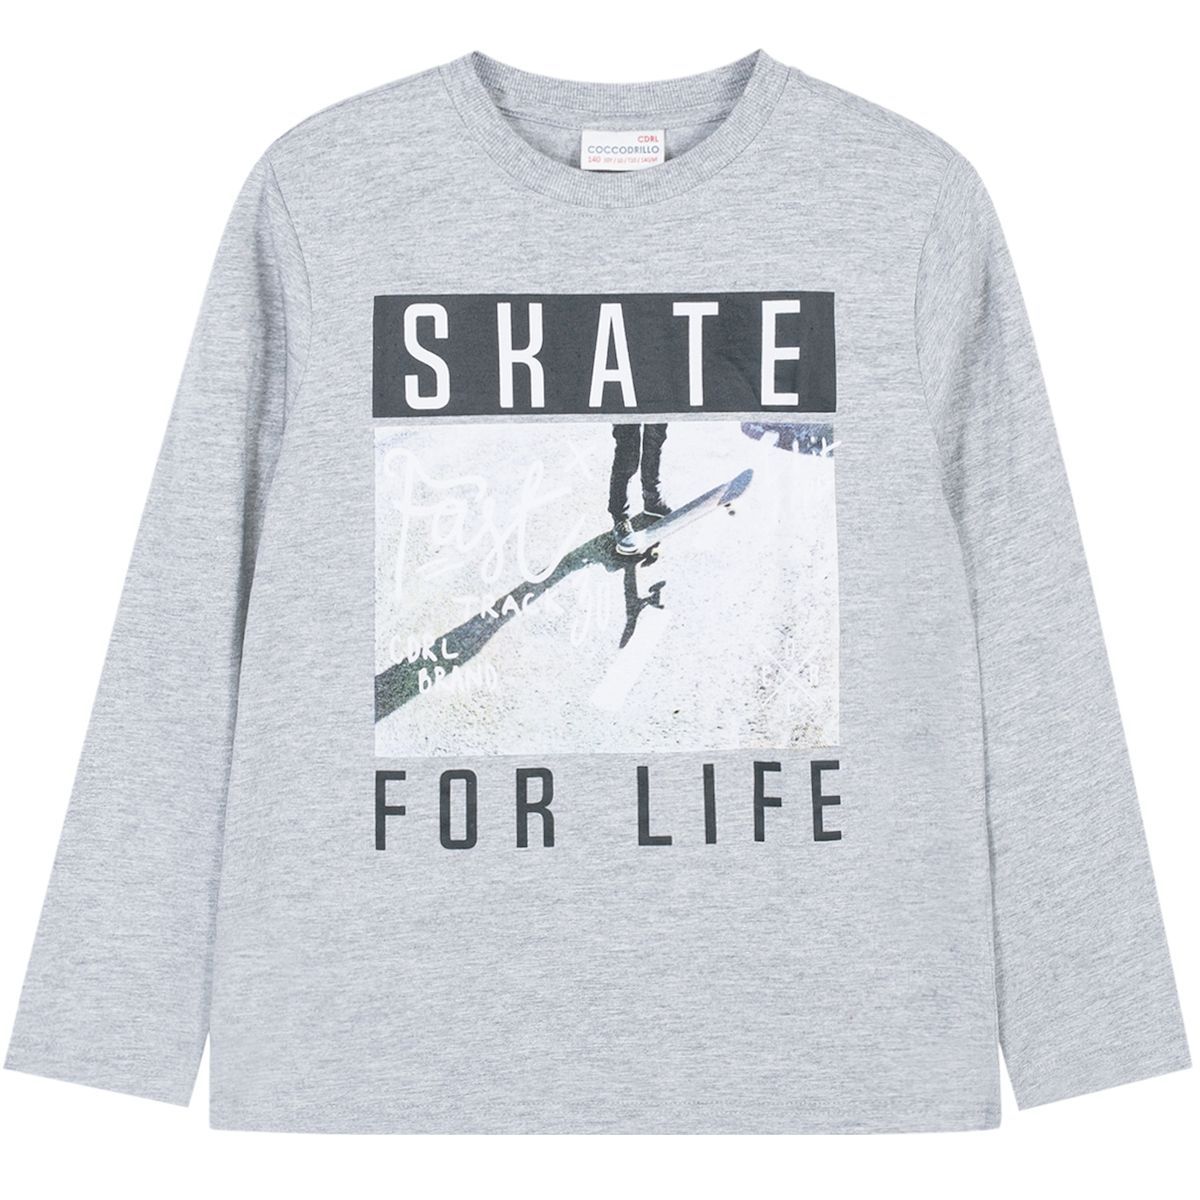    Coccodrillo Skate For Life, : . W191431M2SKA.  152